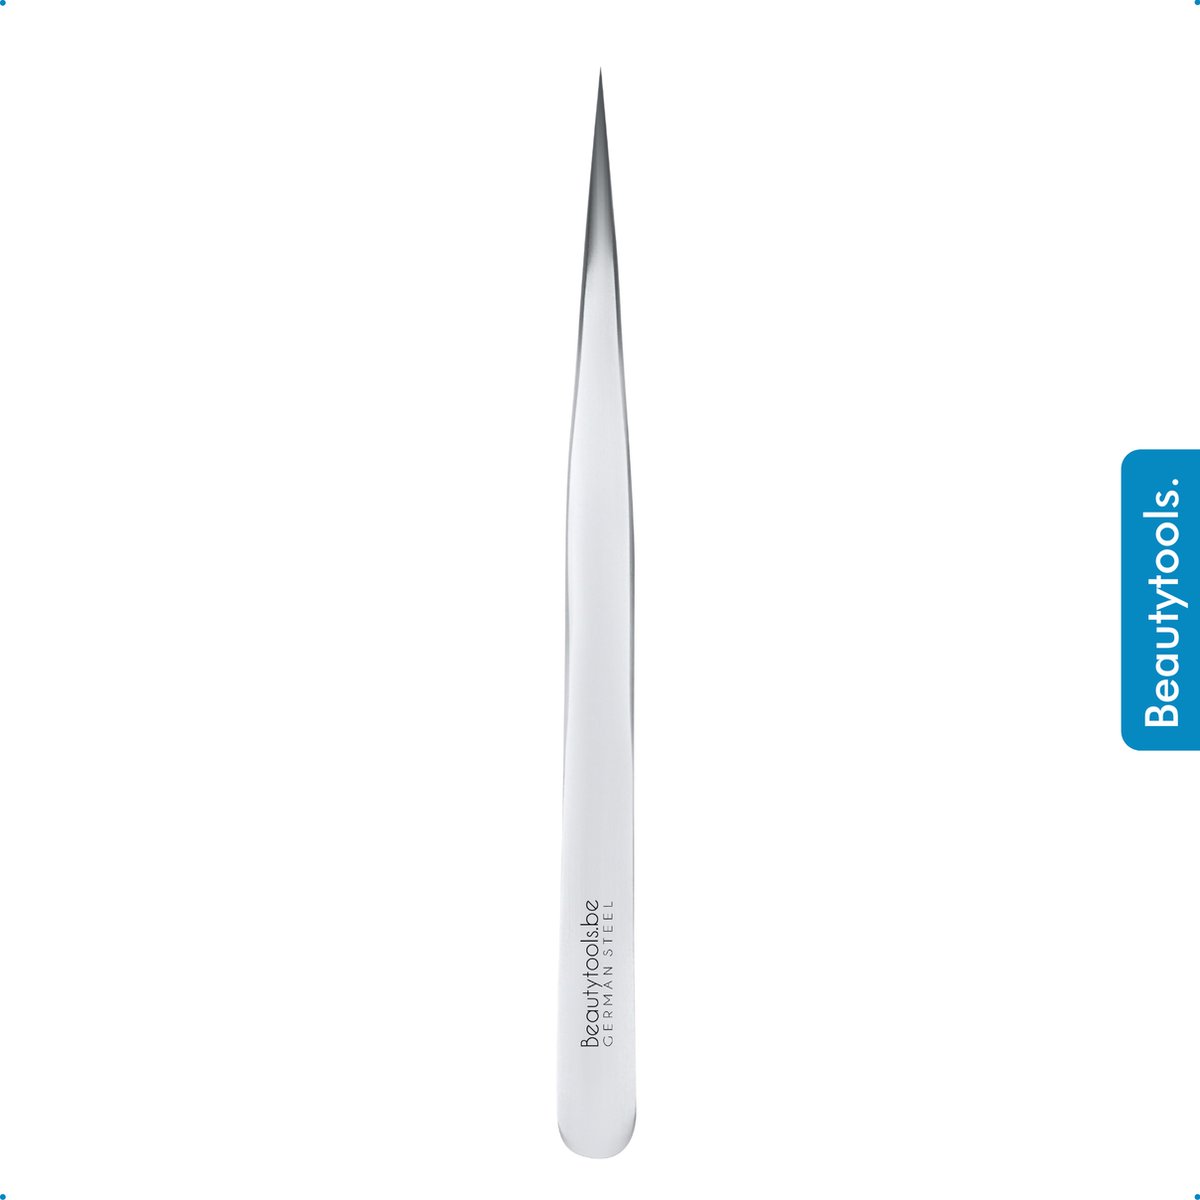 BeautyTools Punt Pincet PRECISION - Pincet met Verstevigde Punt Voor Wimperextensions - Wimper Pincet -Tweezers (13 cm) - Inox (PT-0966)